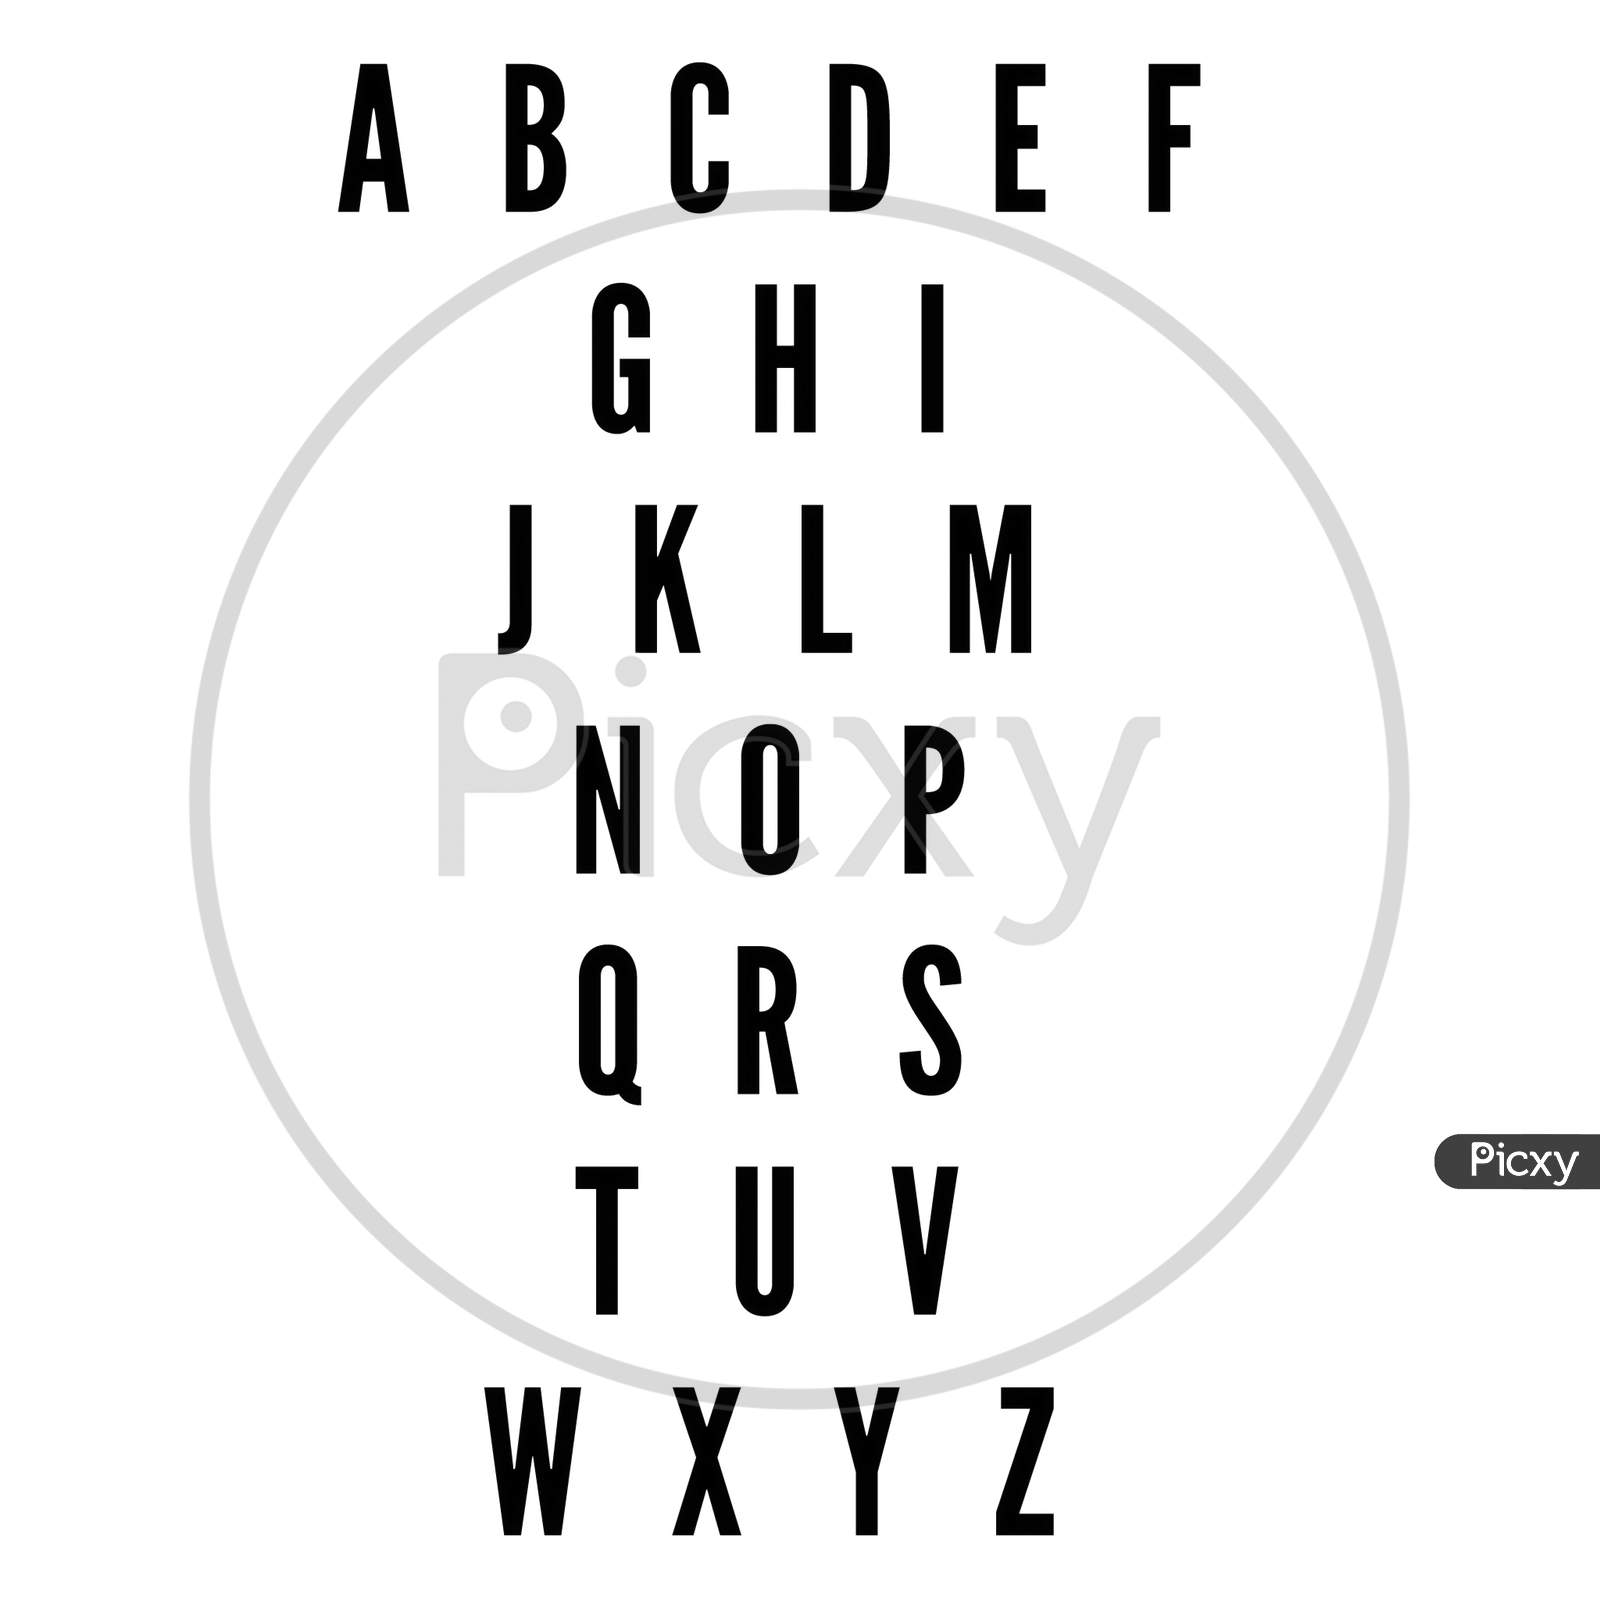 A to Z alphabet